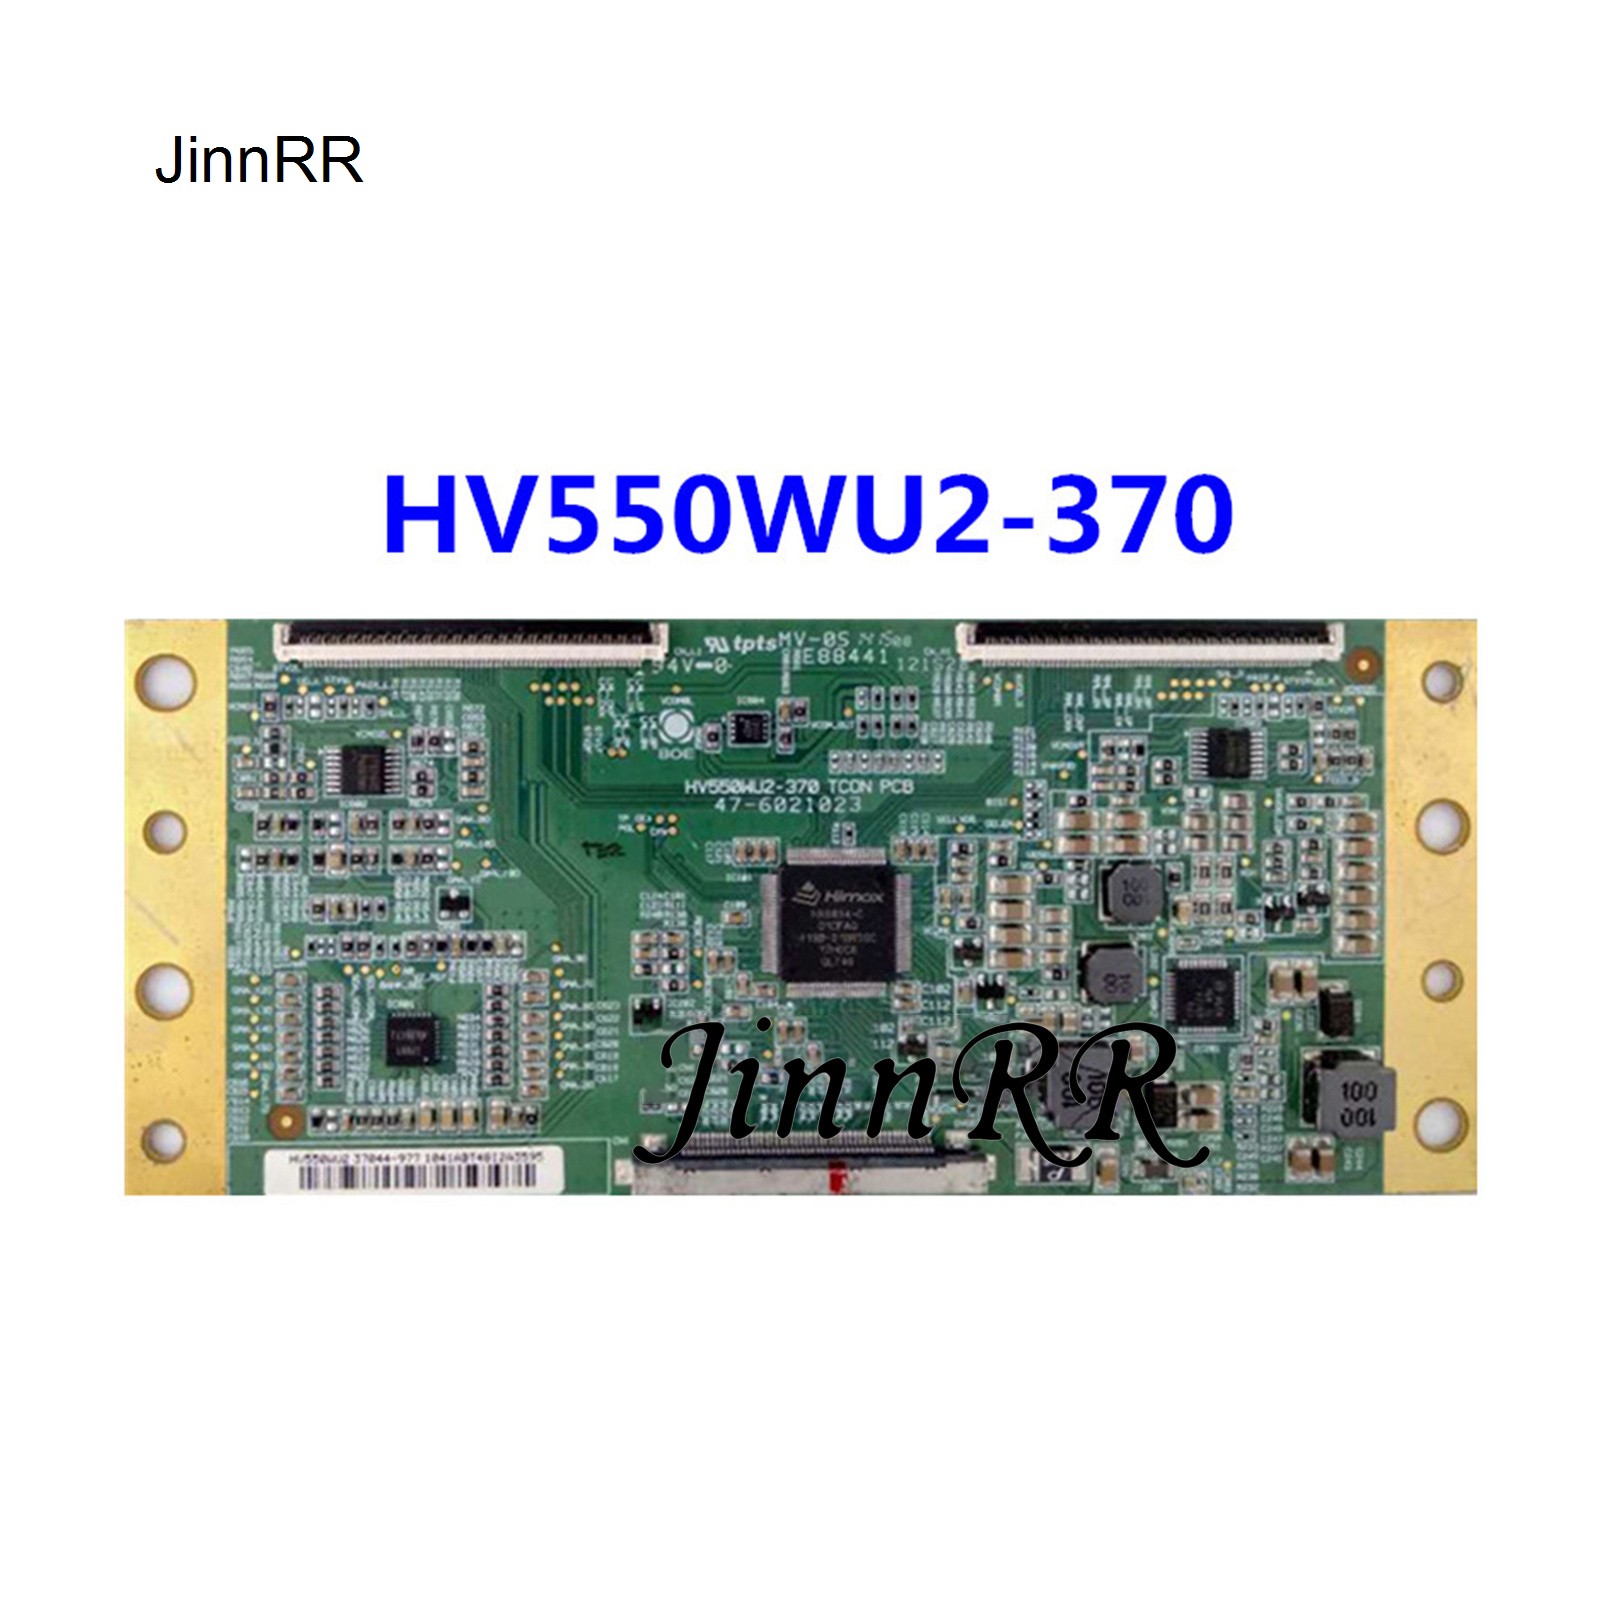 Original HV550WU2-370 TCON PCB 47-6021023 for 55 inch Logic Board Strict Test Quality Assurance HV550WU2-370